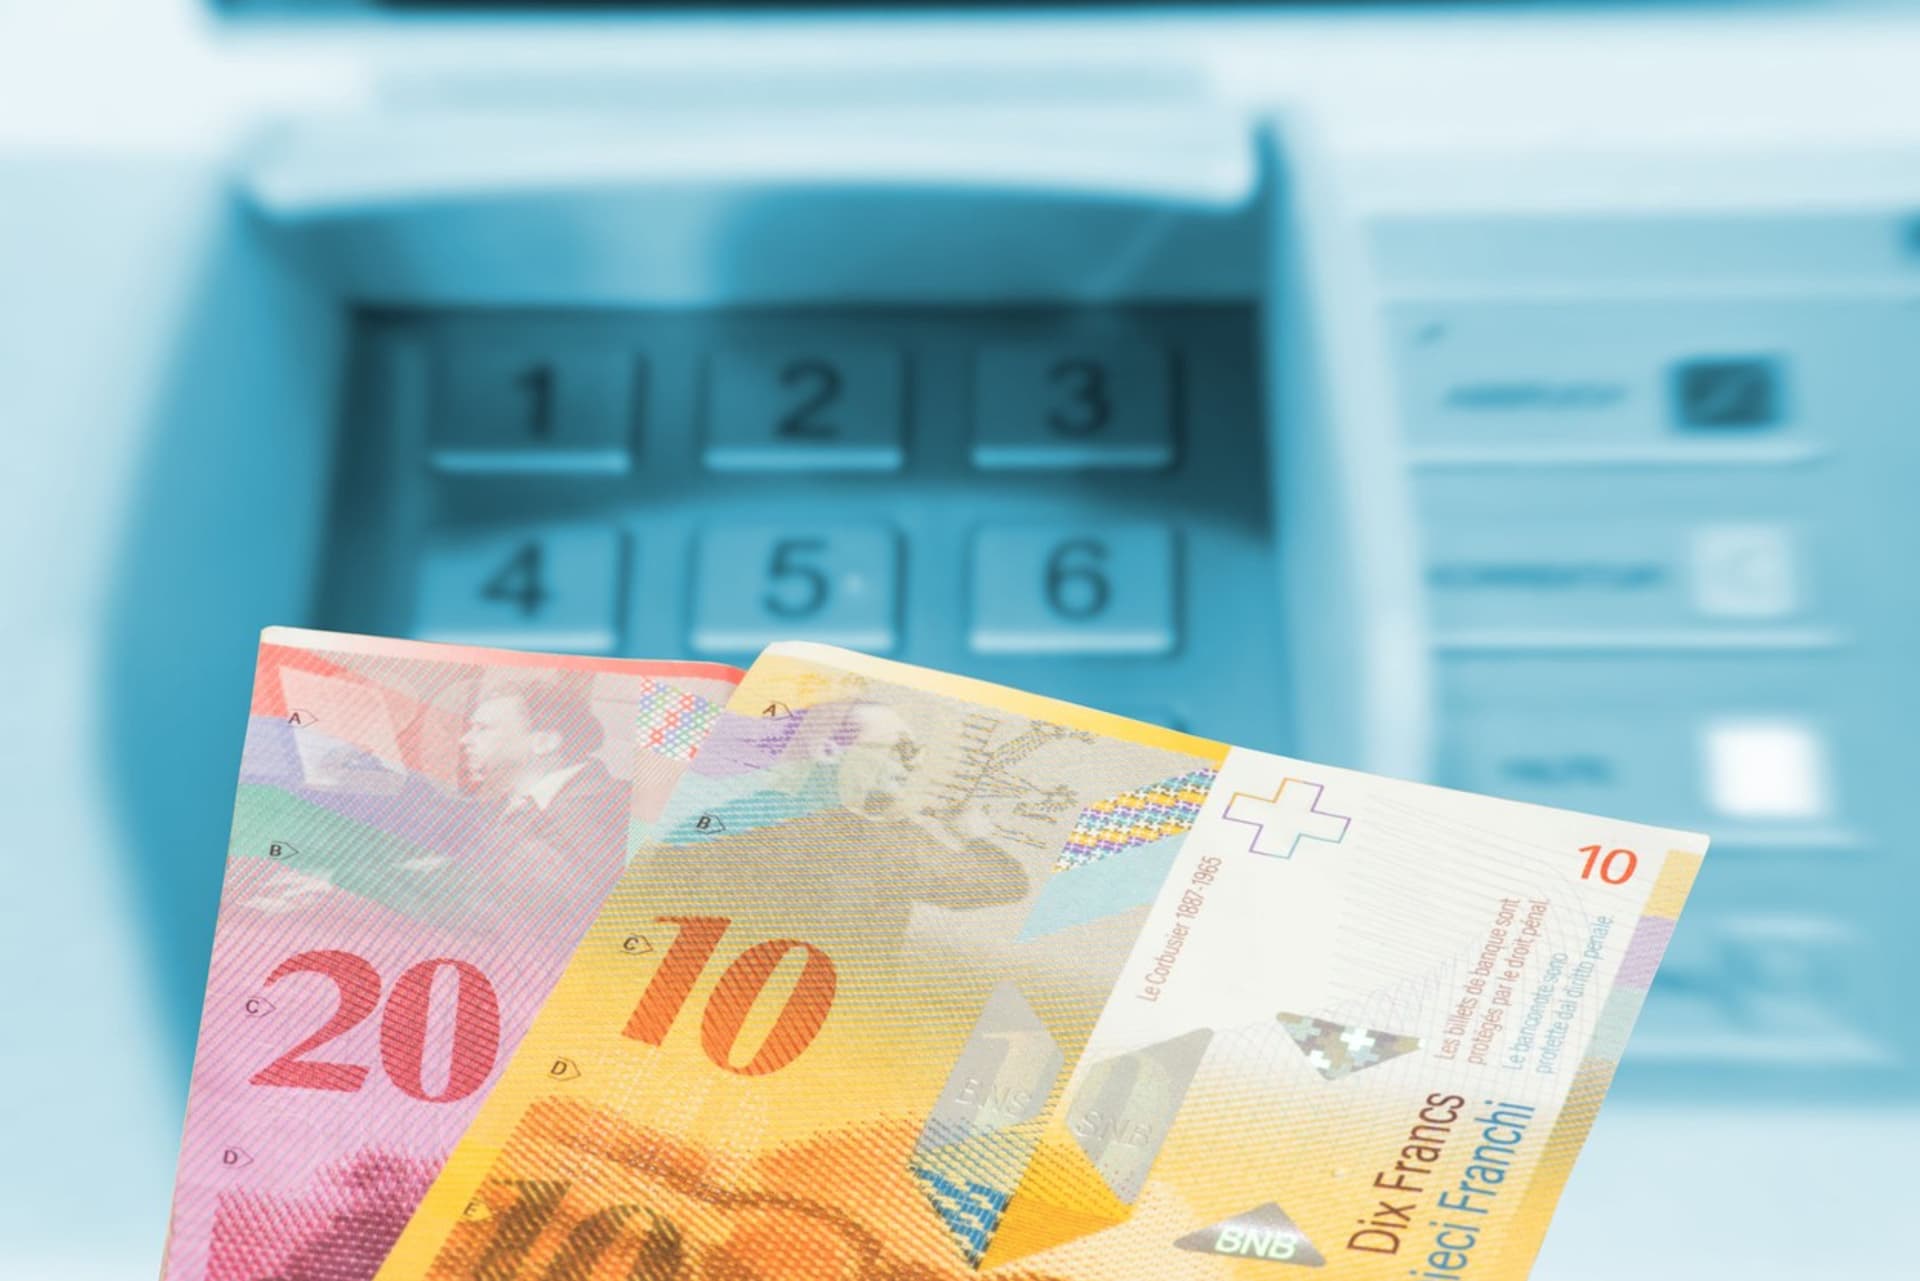 Švýcarské franky po výběru z bankomatu (ilustrační snímek)